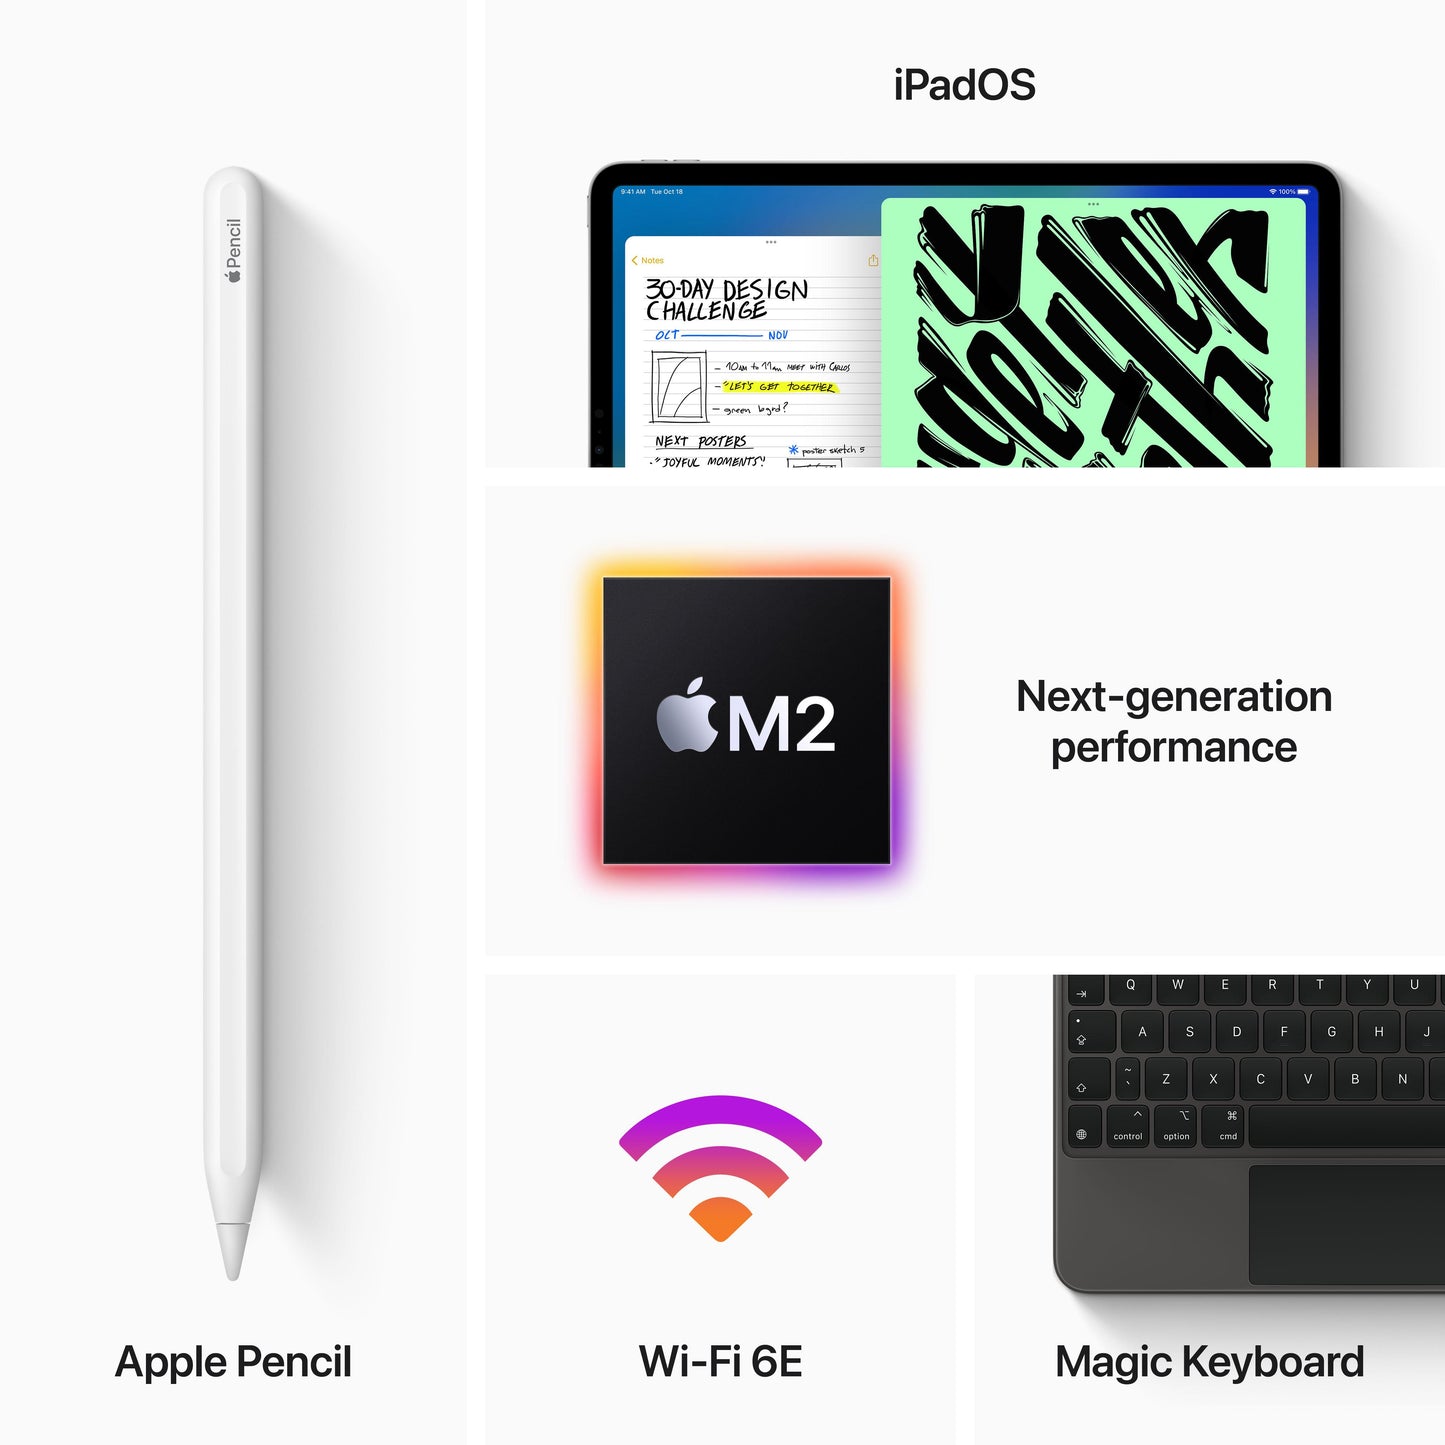 2022 iPad Pro 11 pouces, Wi-Fi, 128 Go - Argent (4e génération)